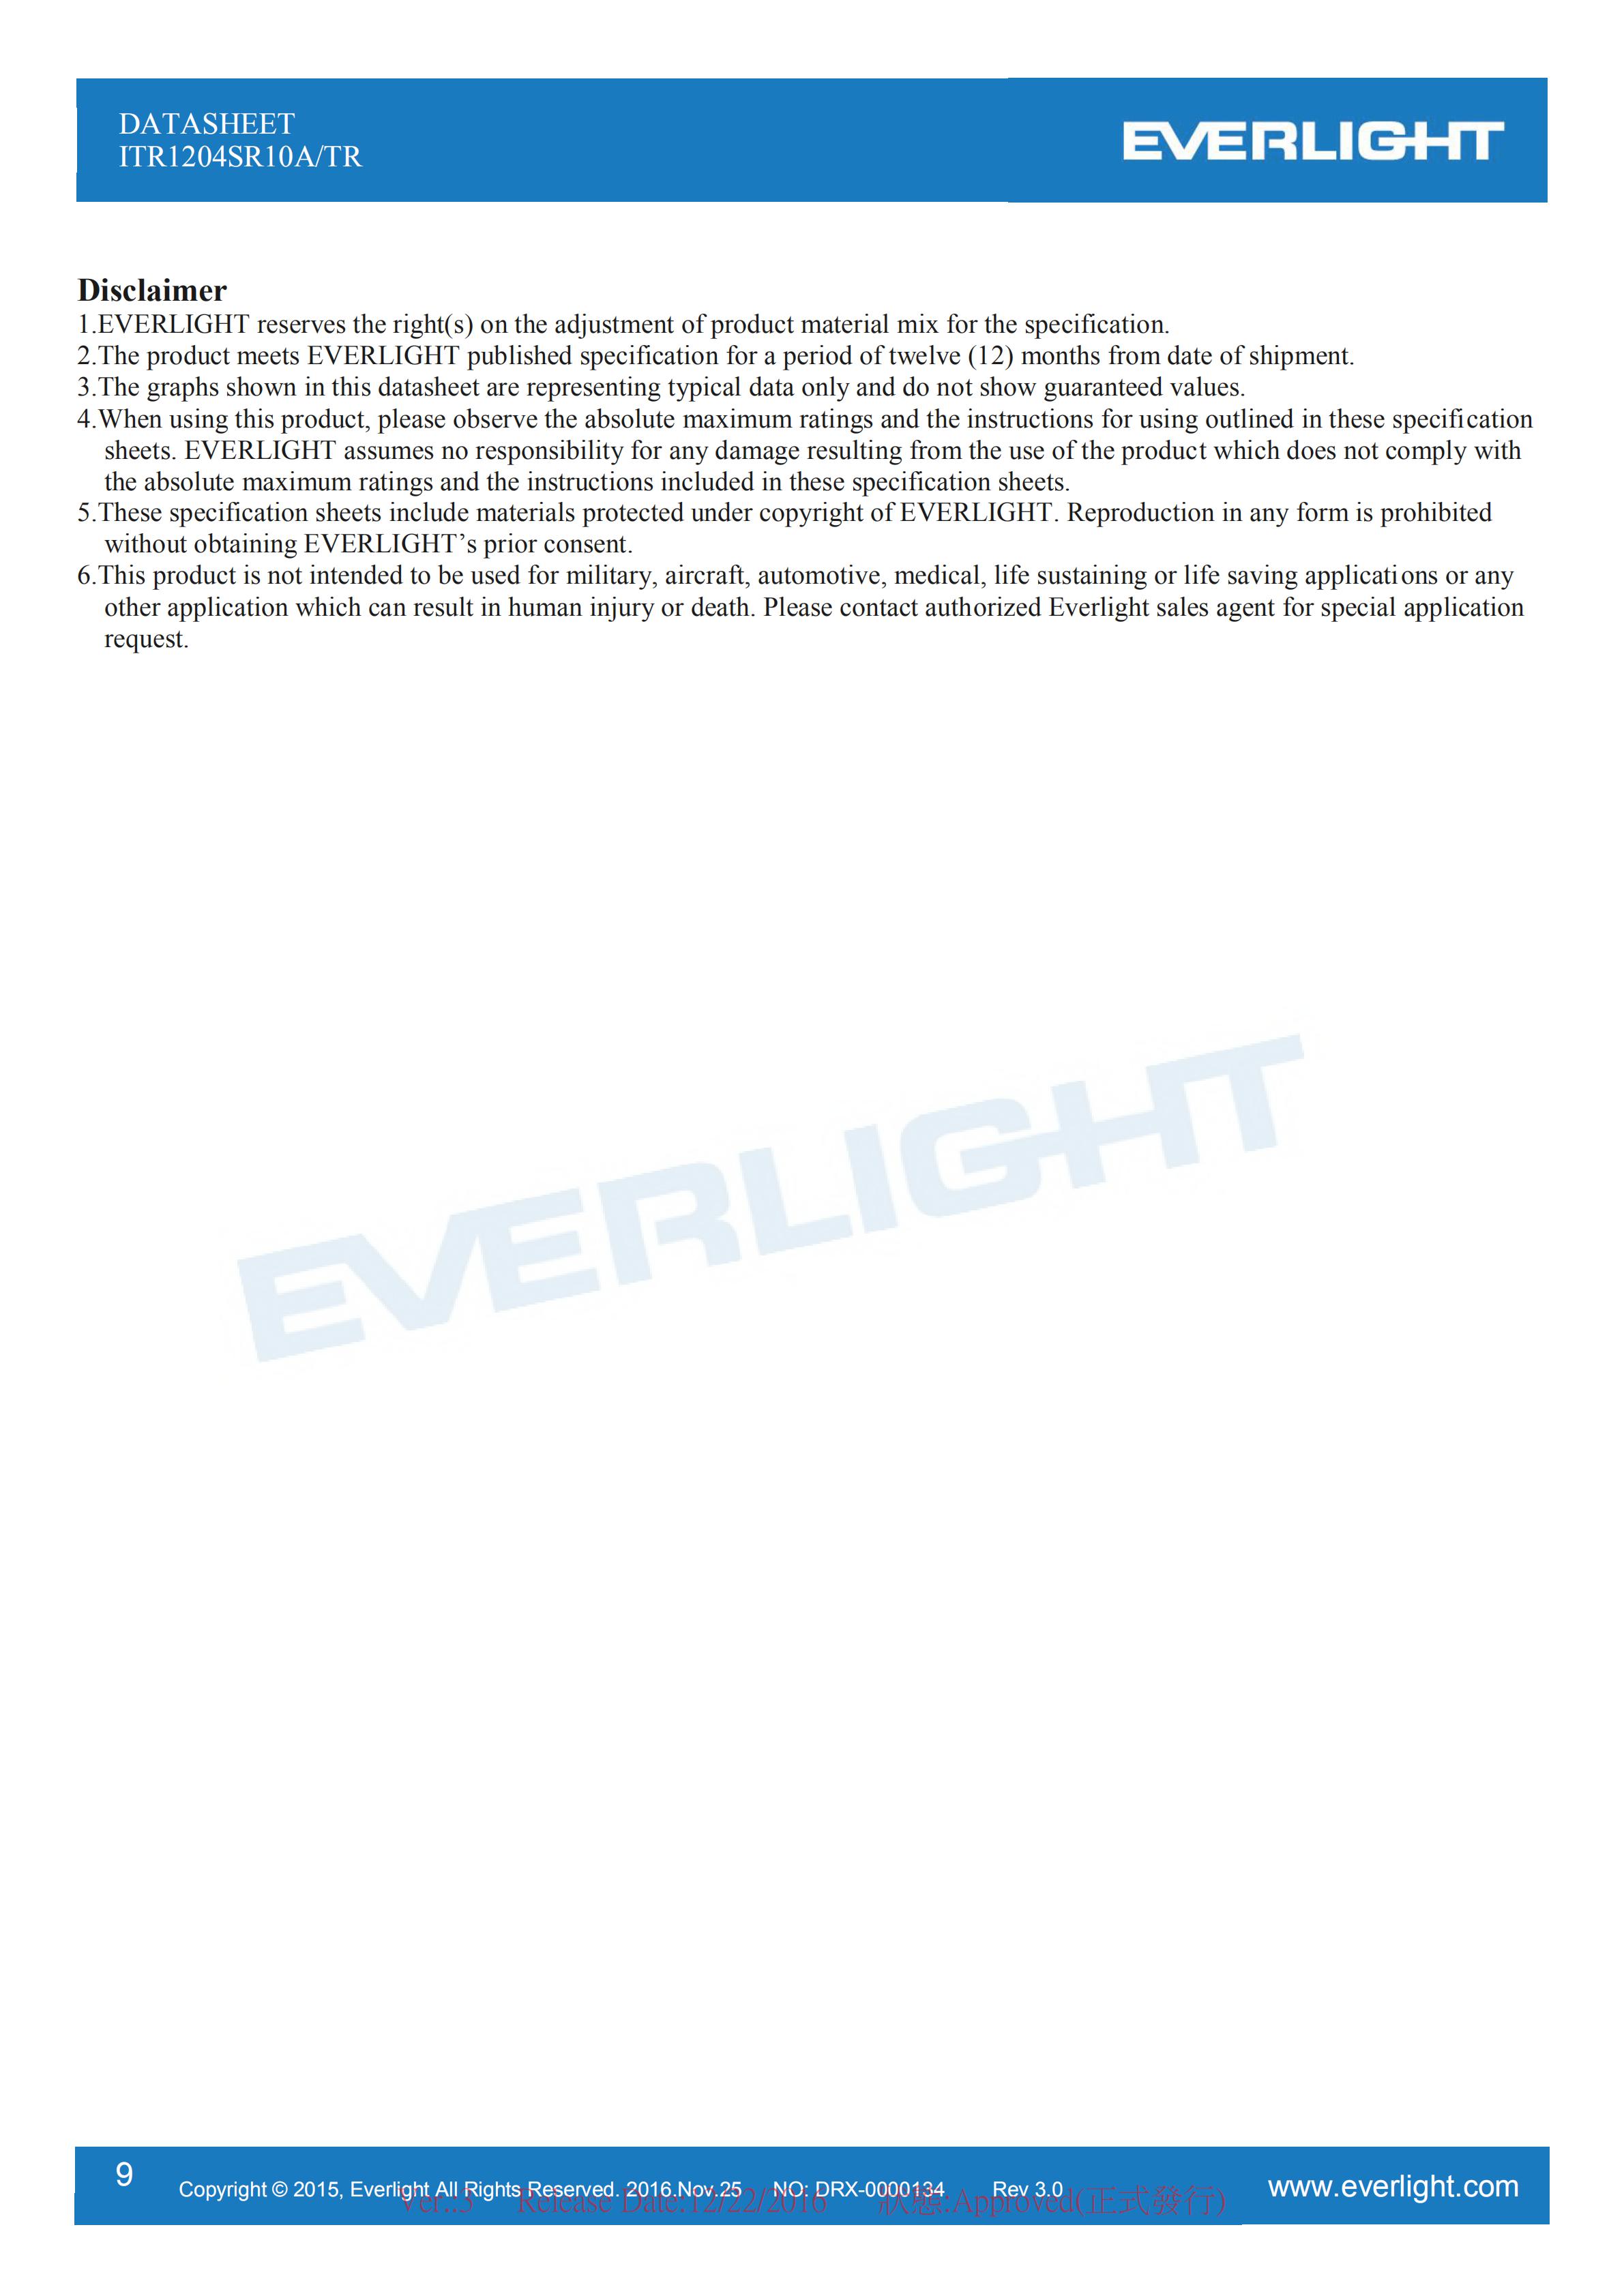 EVERLIGHT Optical Switch ITR1204SR10A/TR Opto Interrupter Datasheet